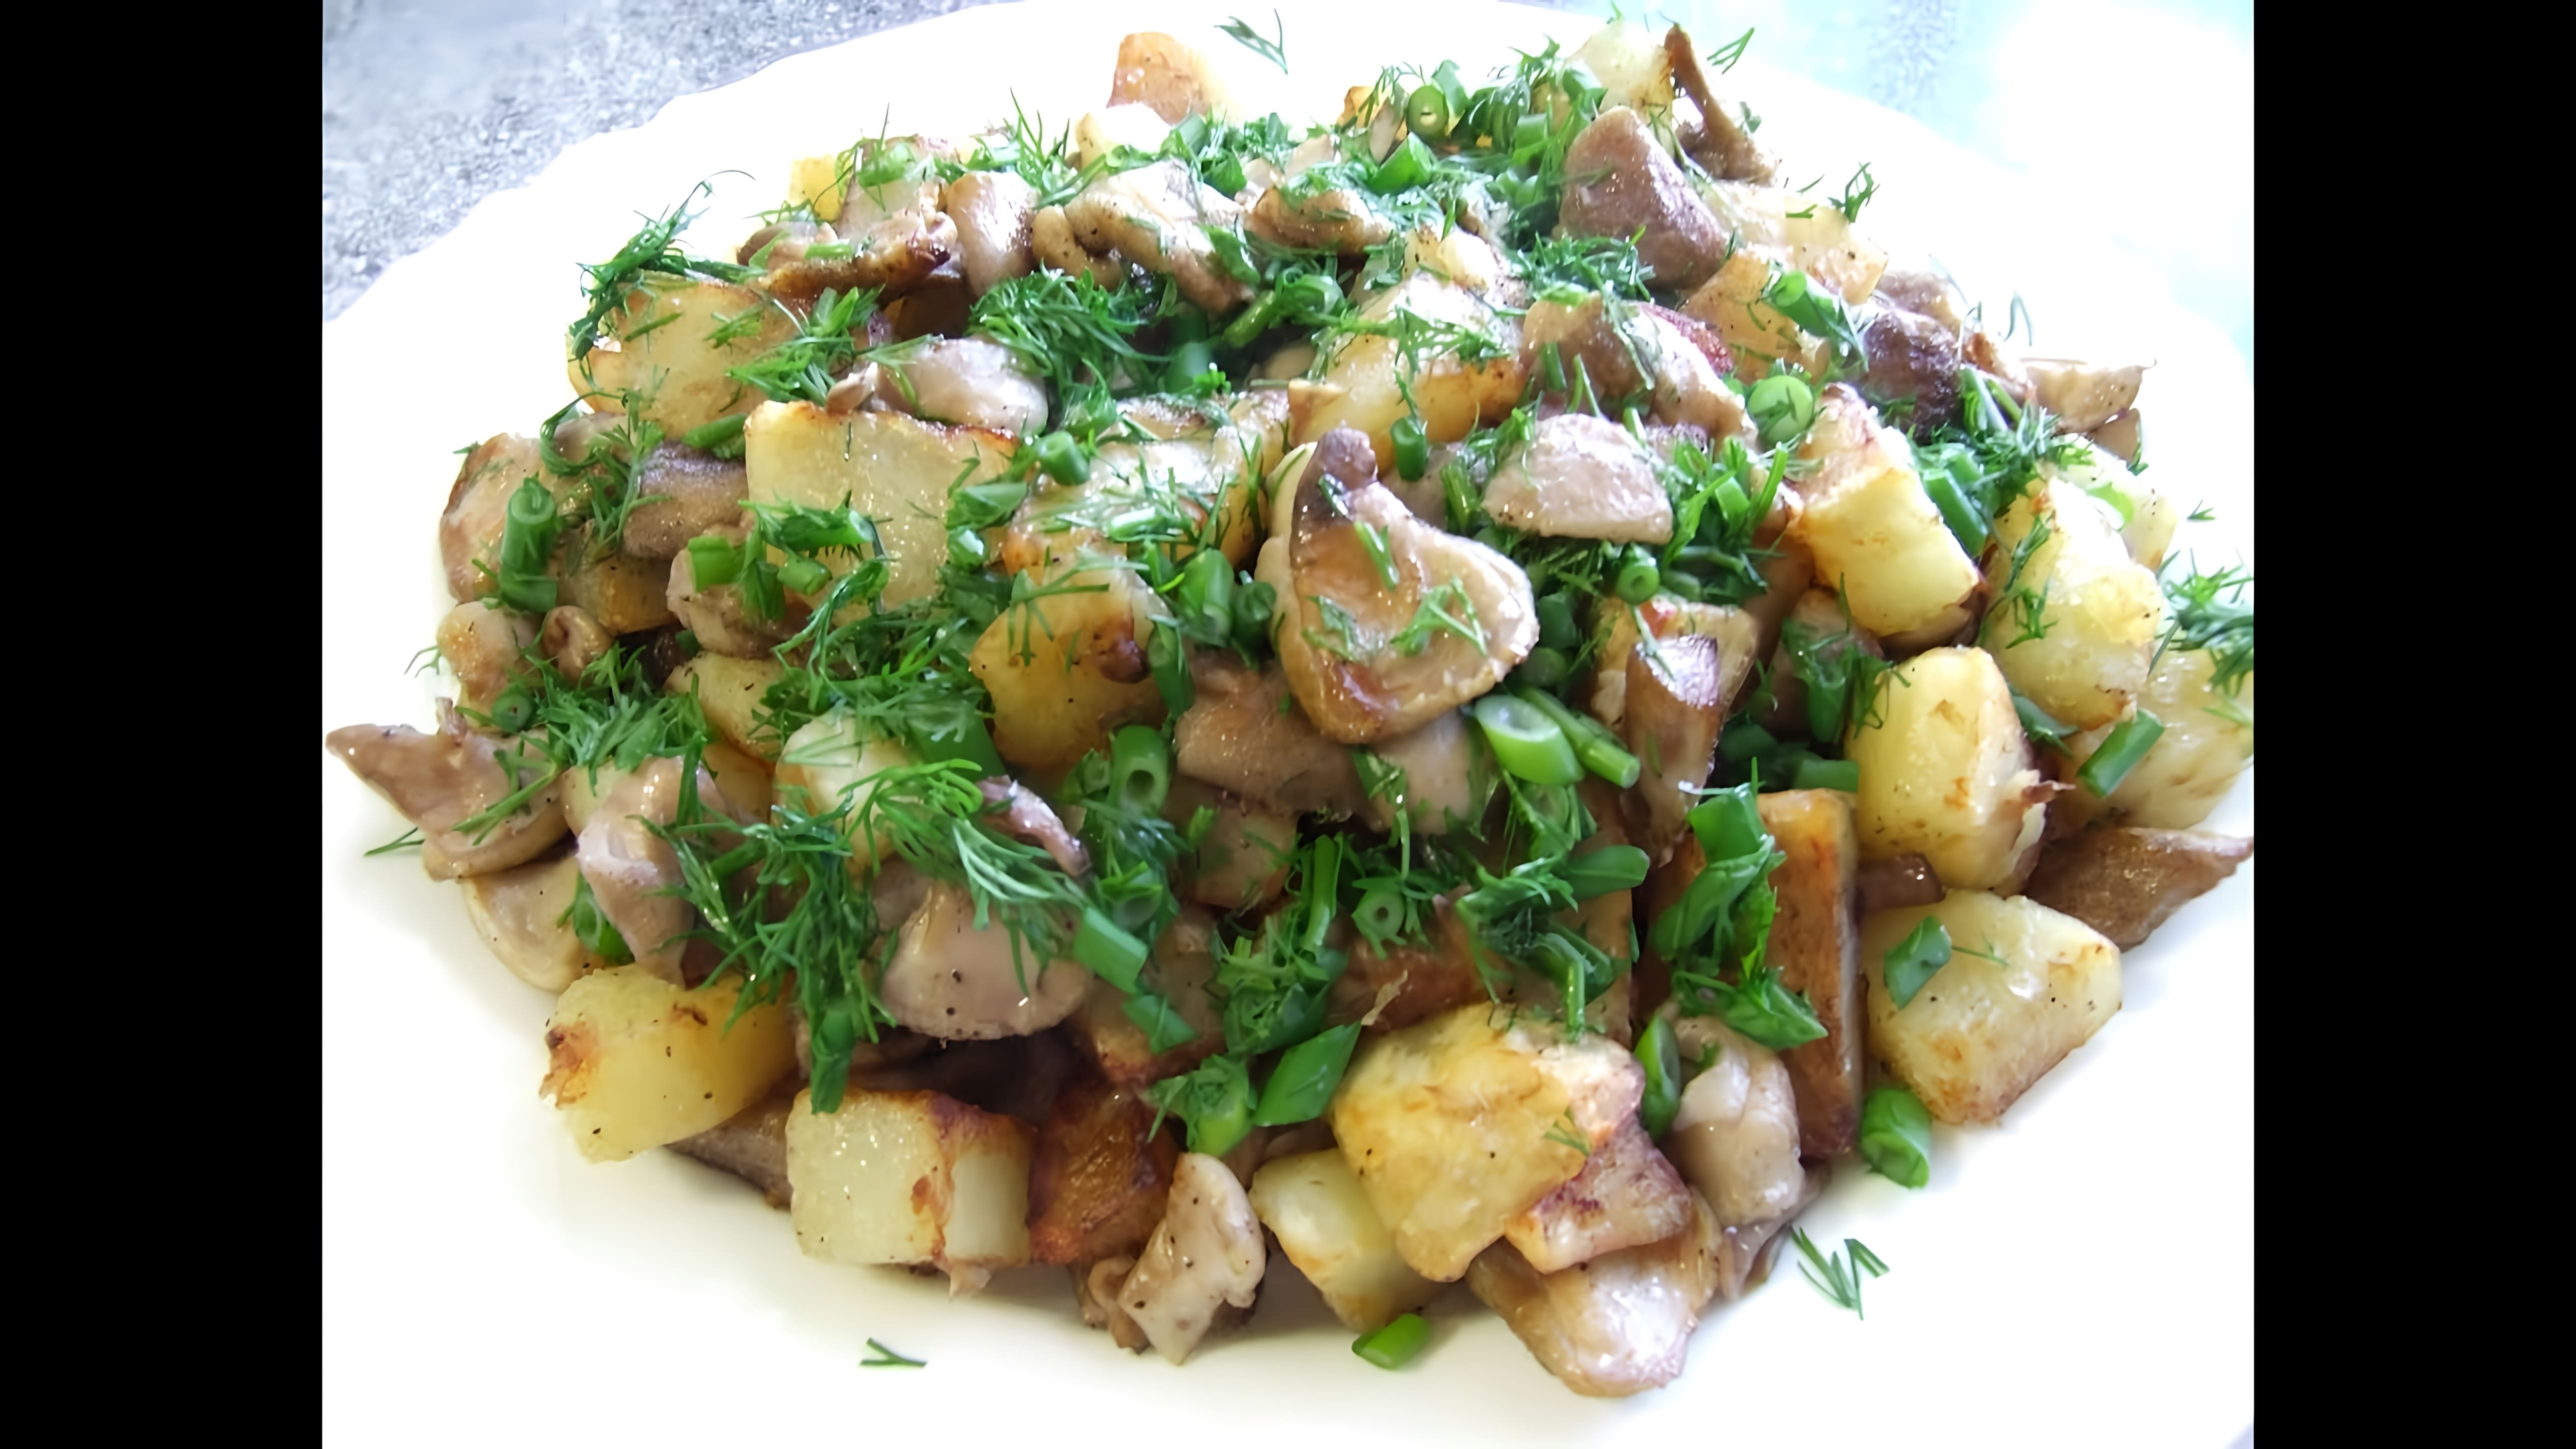 В этом видео демонстрируется рецепт приготовления жареной картошки с грибами